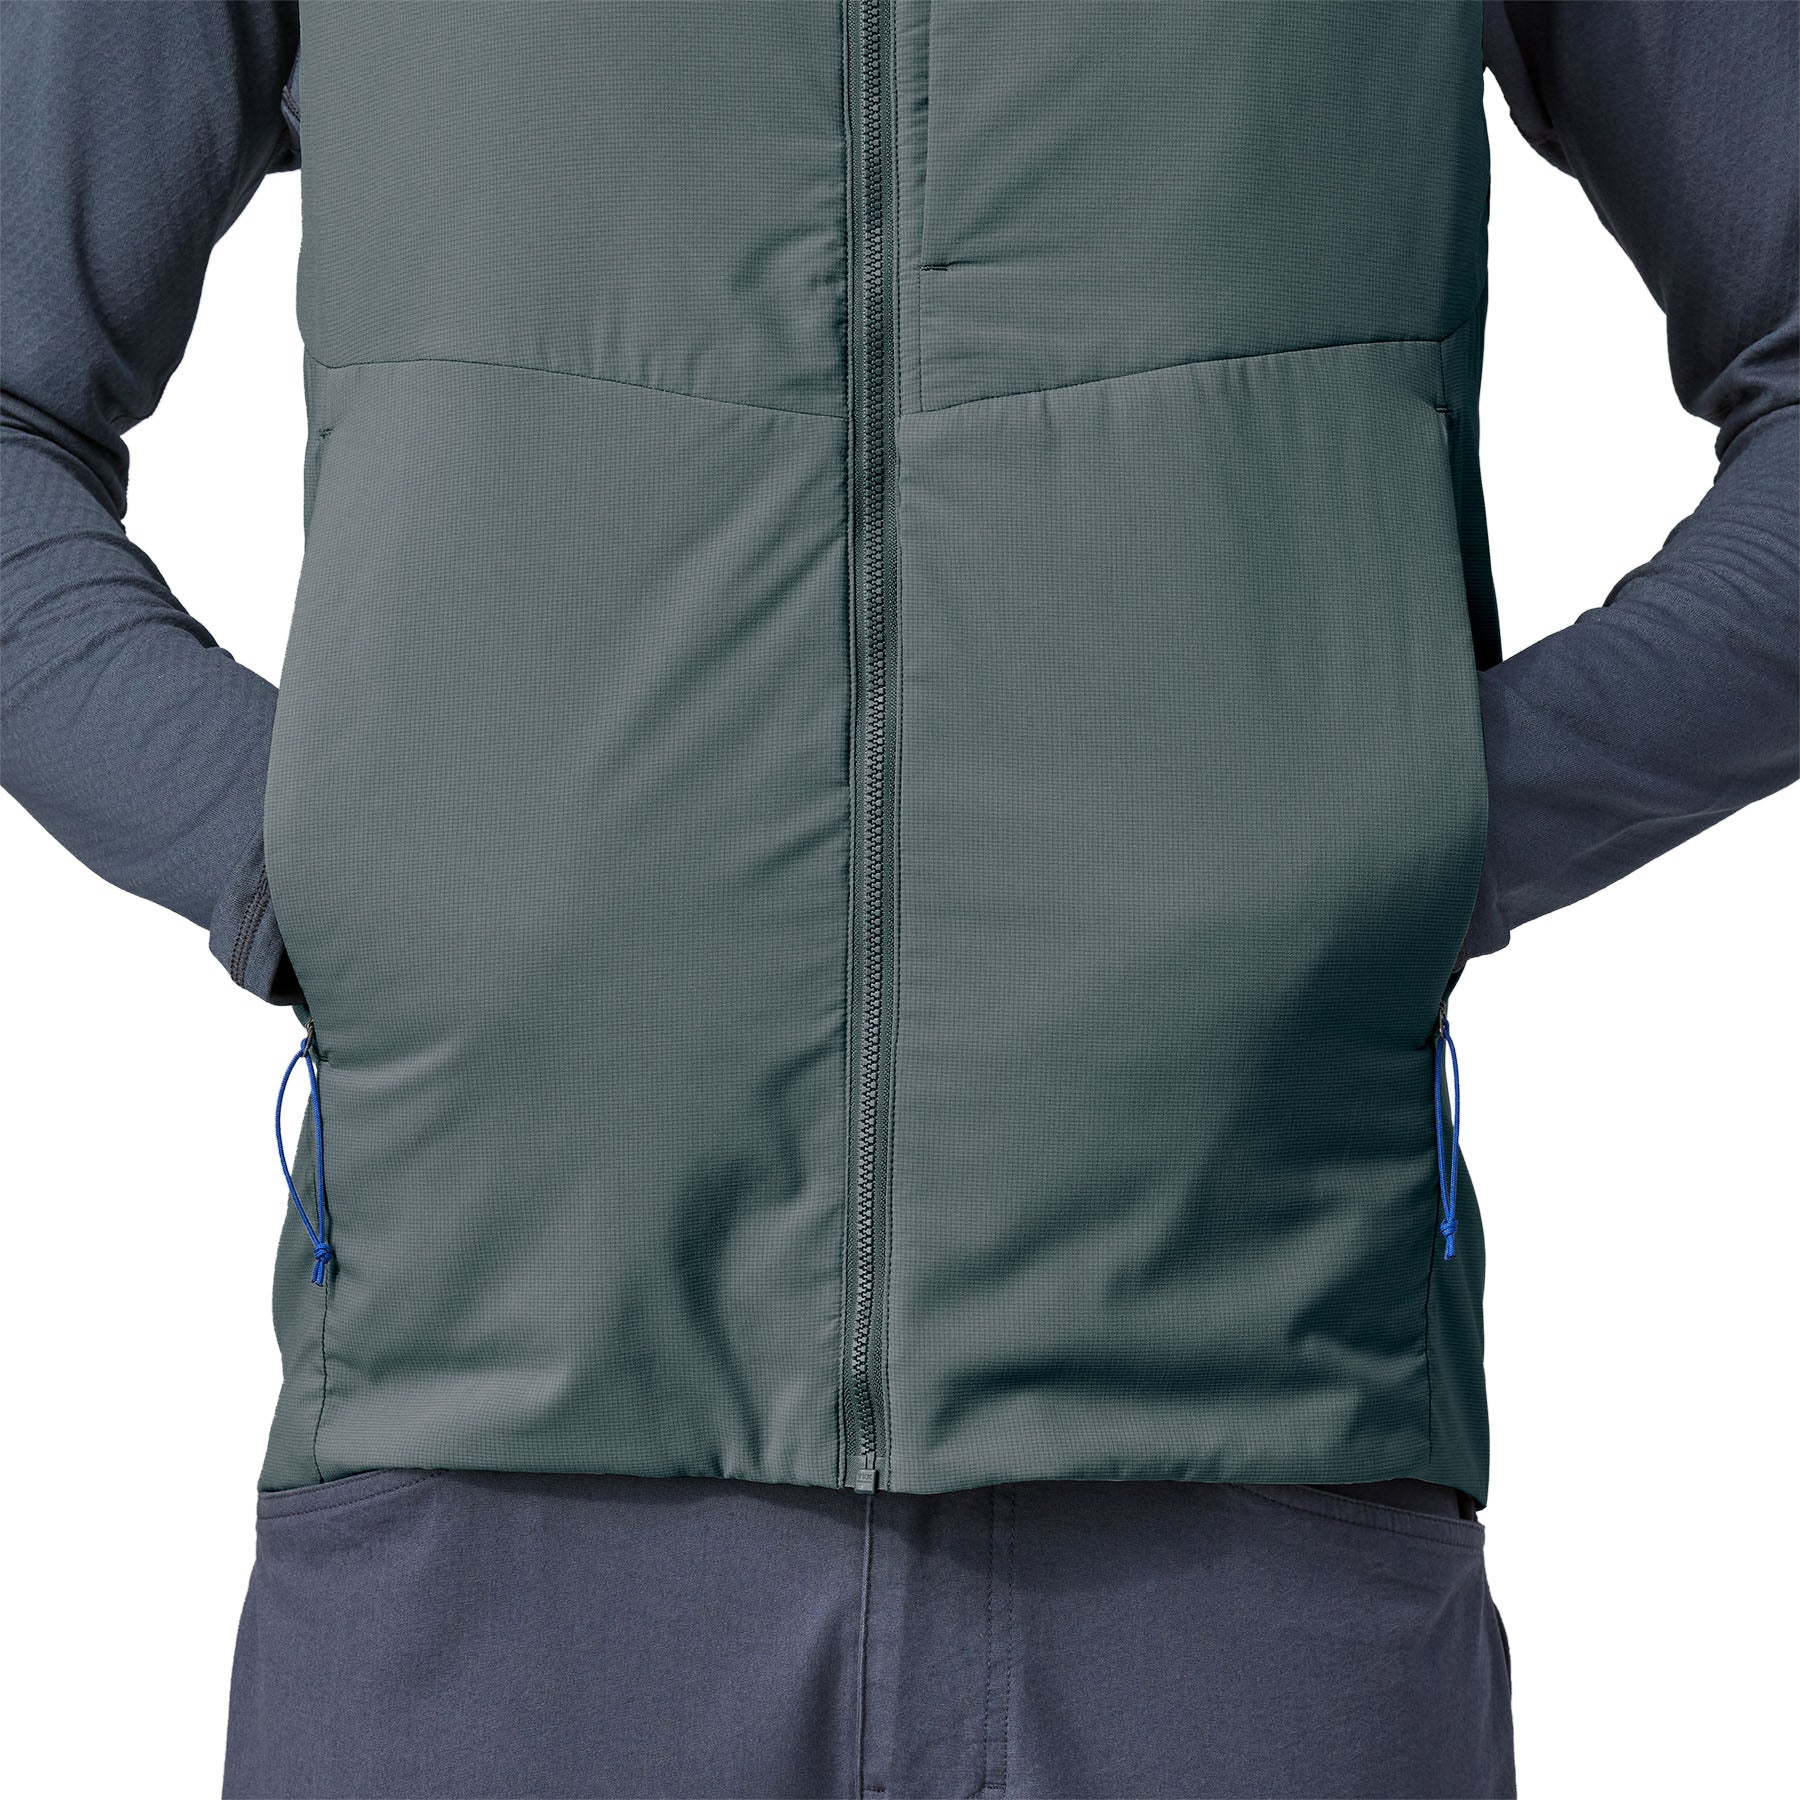 Men's Nano-Air® Light Vest